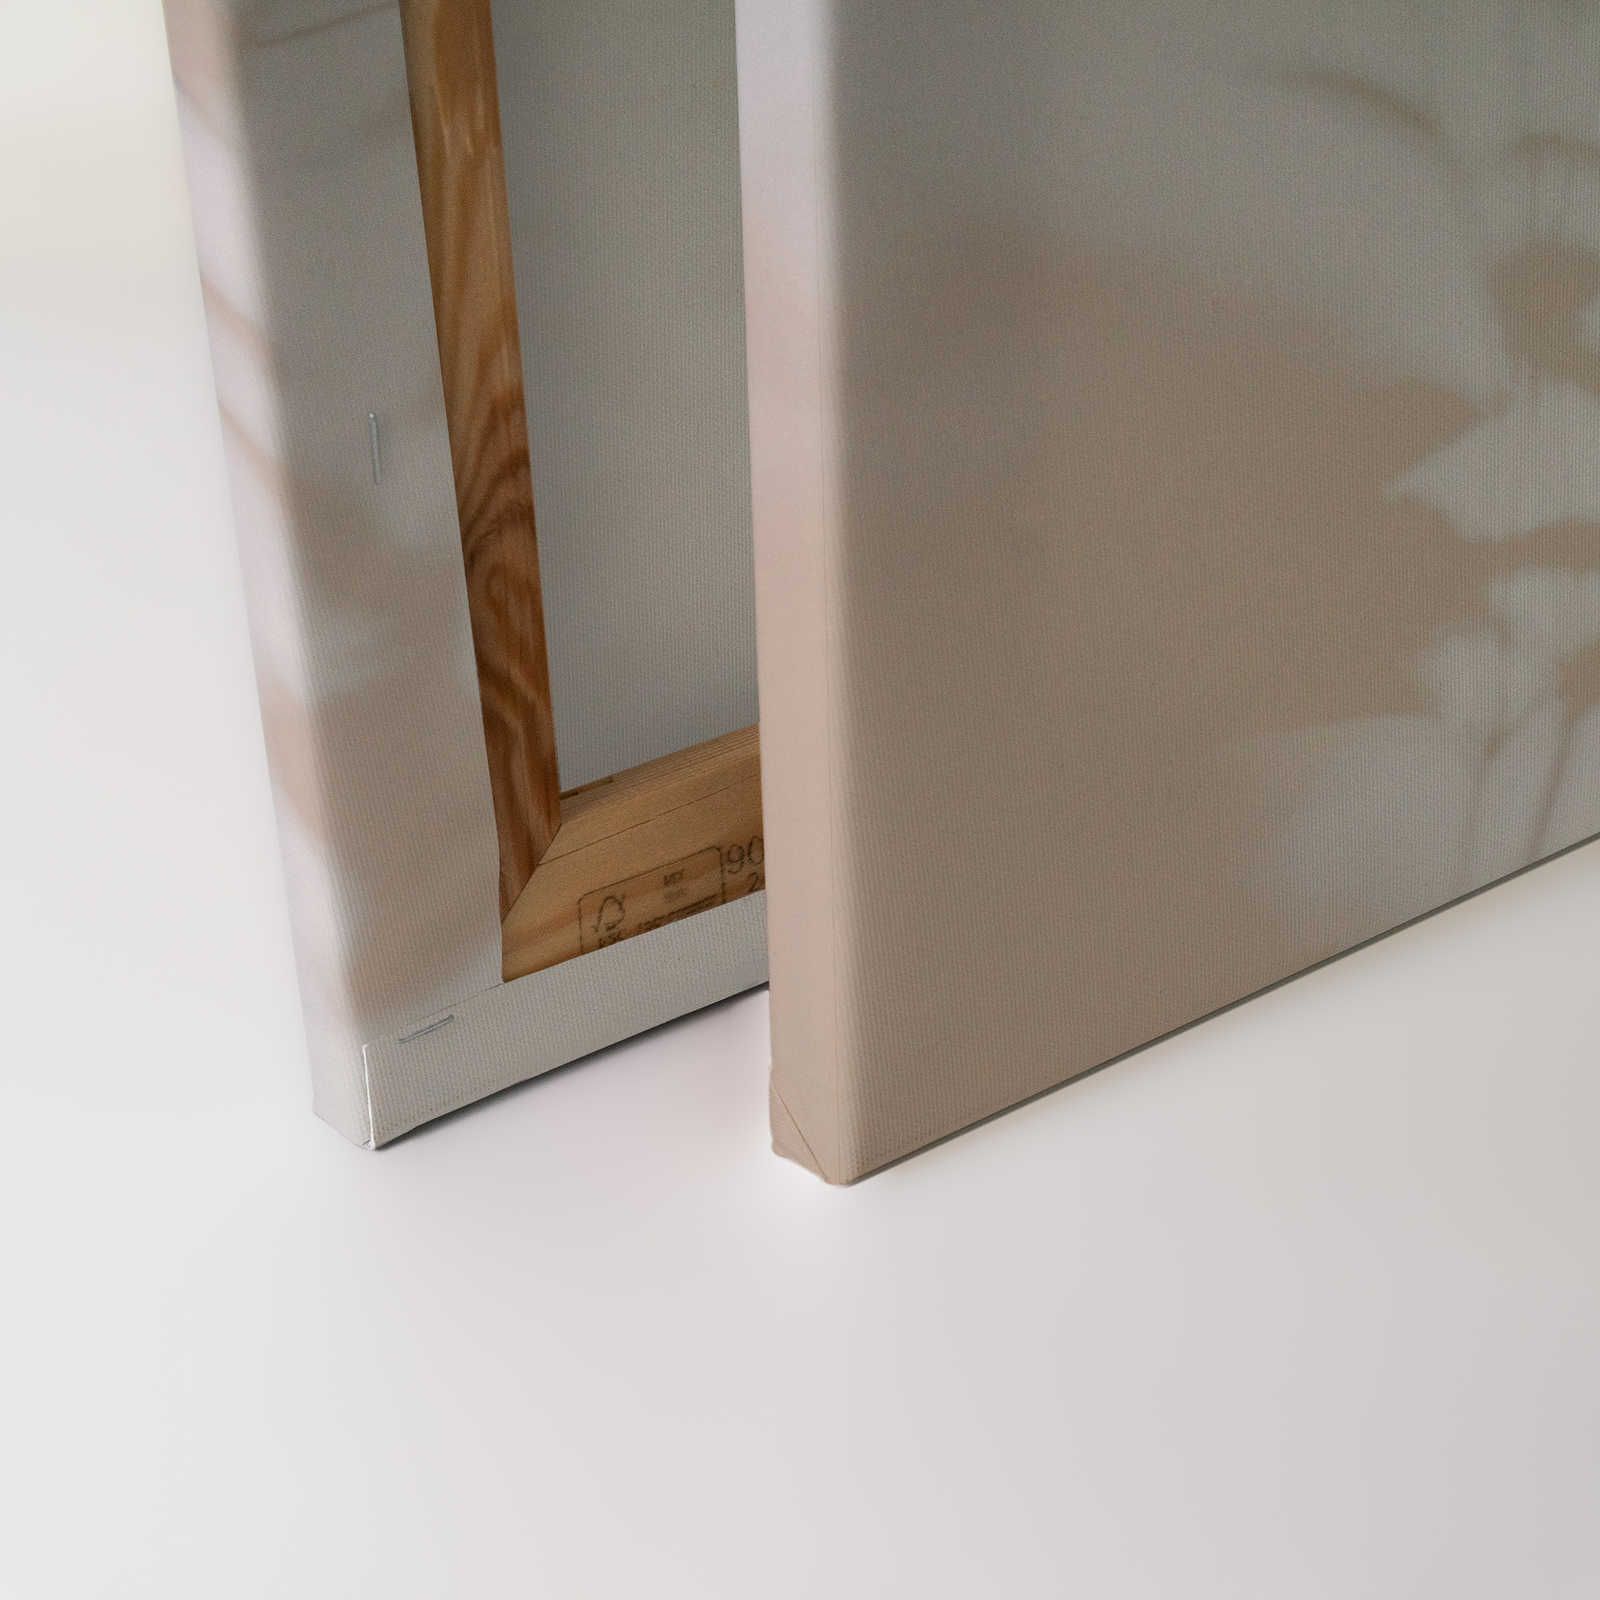             Camera d'ombra 1 - Tela naturale Beige e bianco, disegno sfumato - 0,90 m x 0,60 m
        